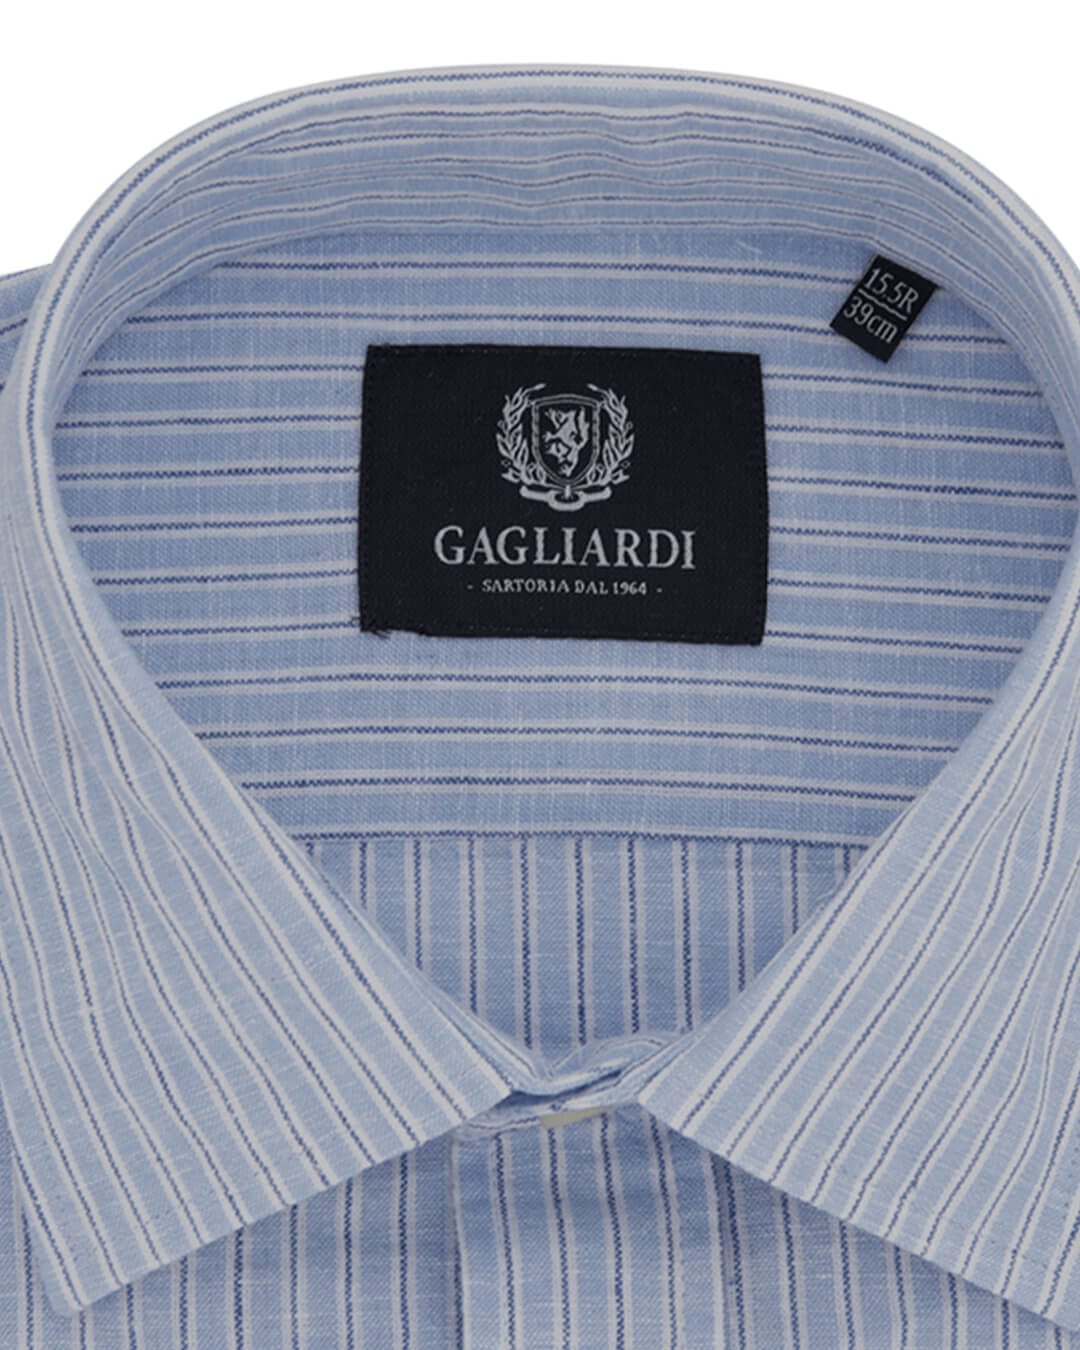 Gagliardi Shirts Gagliardi Mid Blue Striped Tailored Fit Classic Collar Linen Shirt